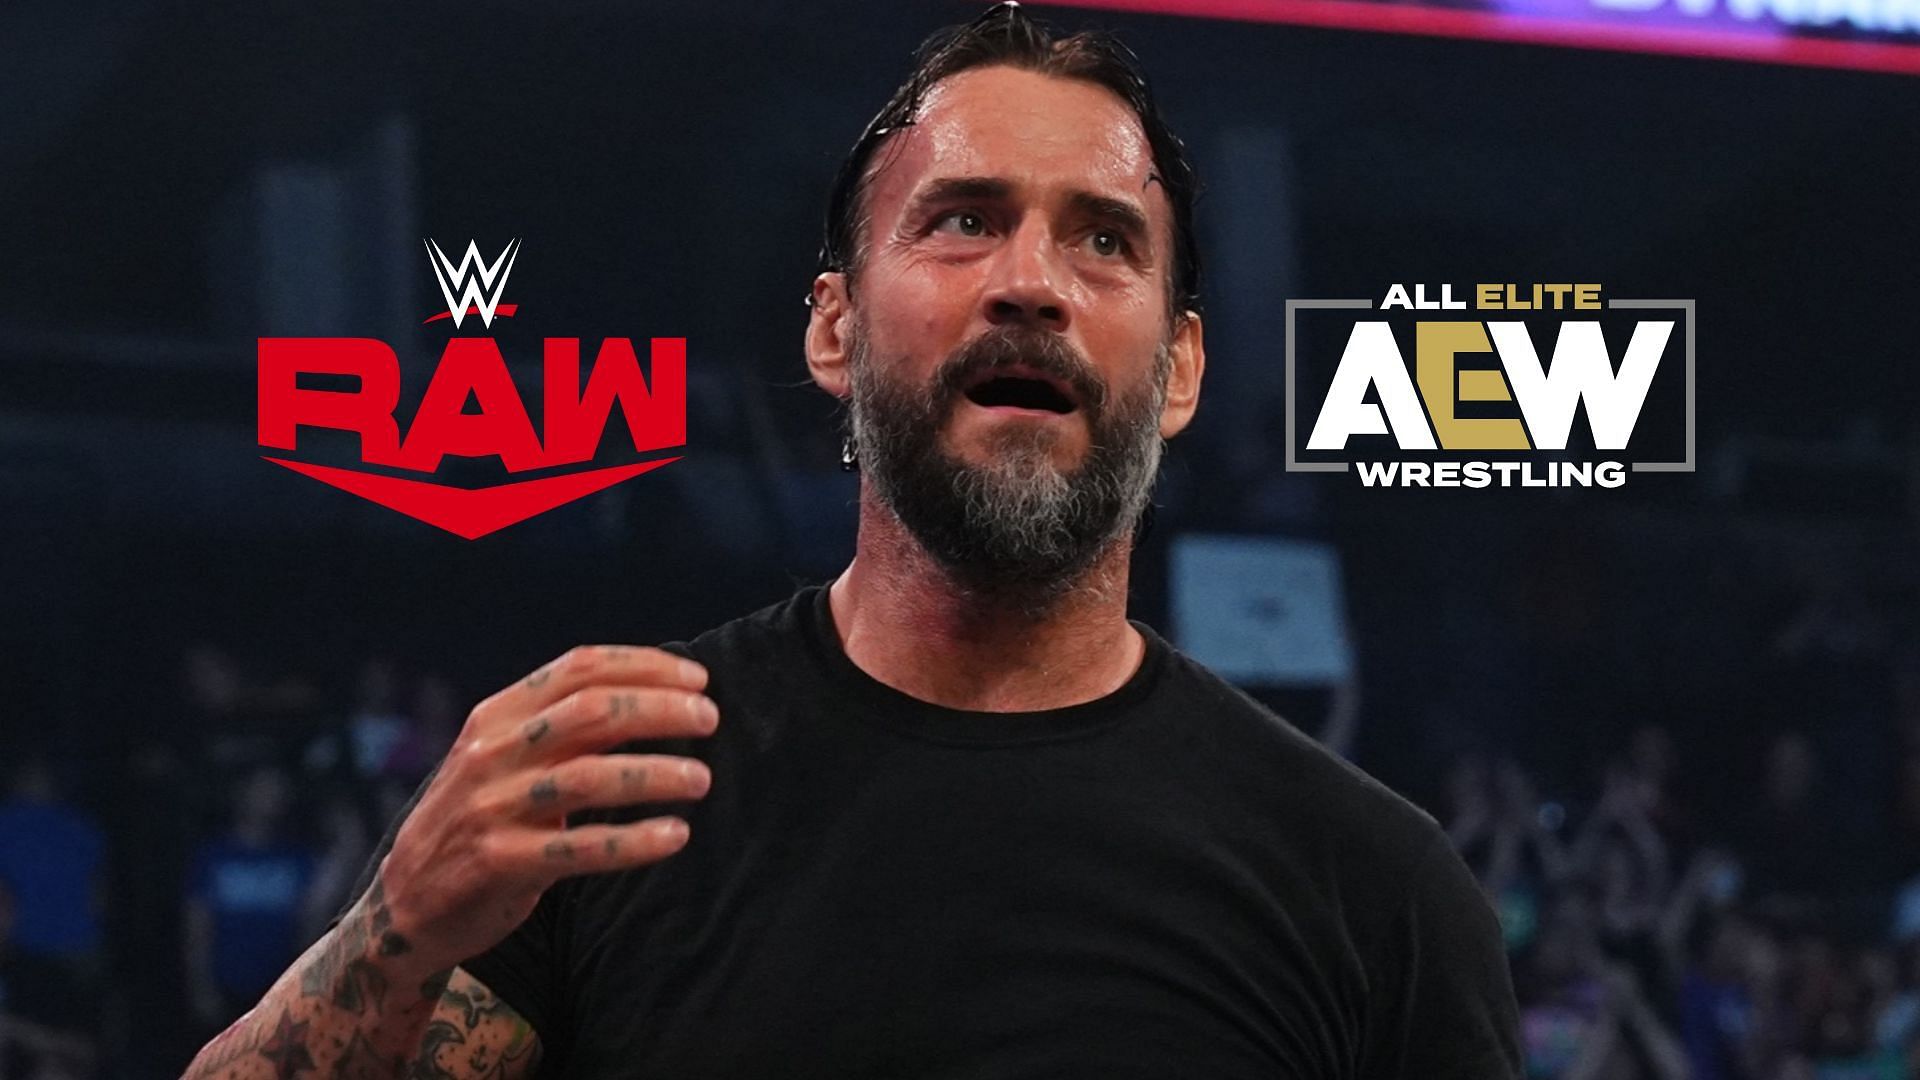 Why was CM Punk at WWE Raw last night?